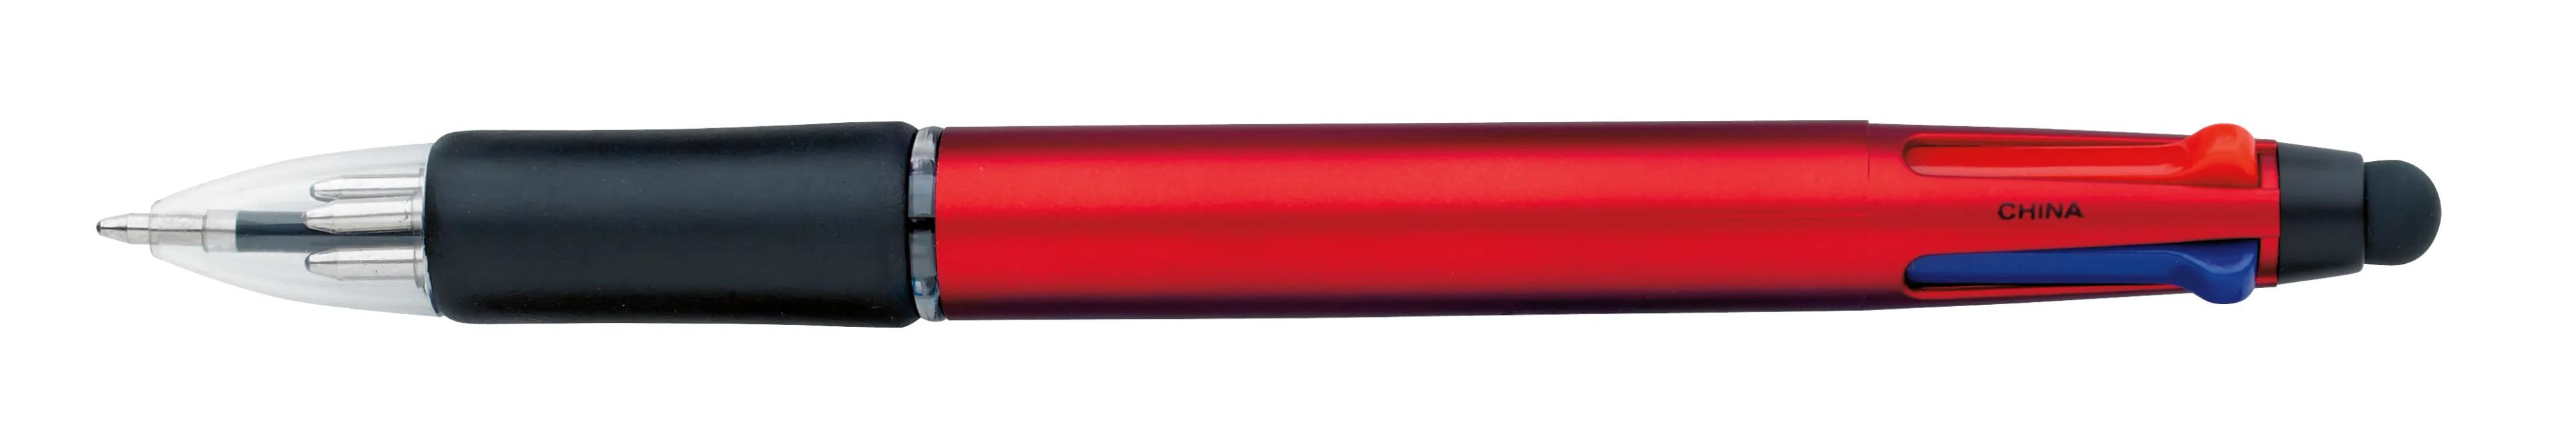 Orbitor Metallic Stylus Pen 23 of 56